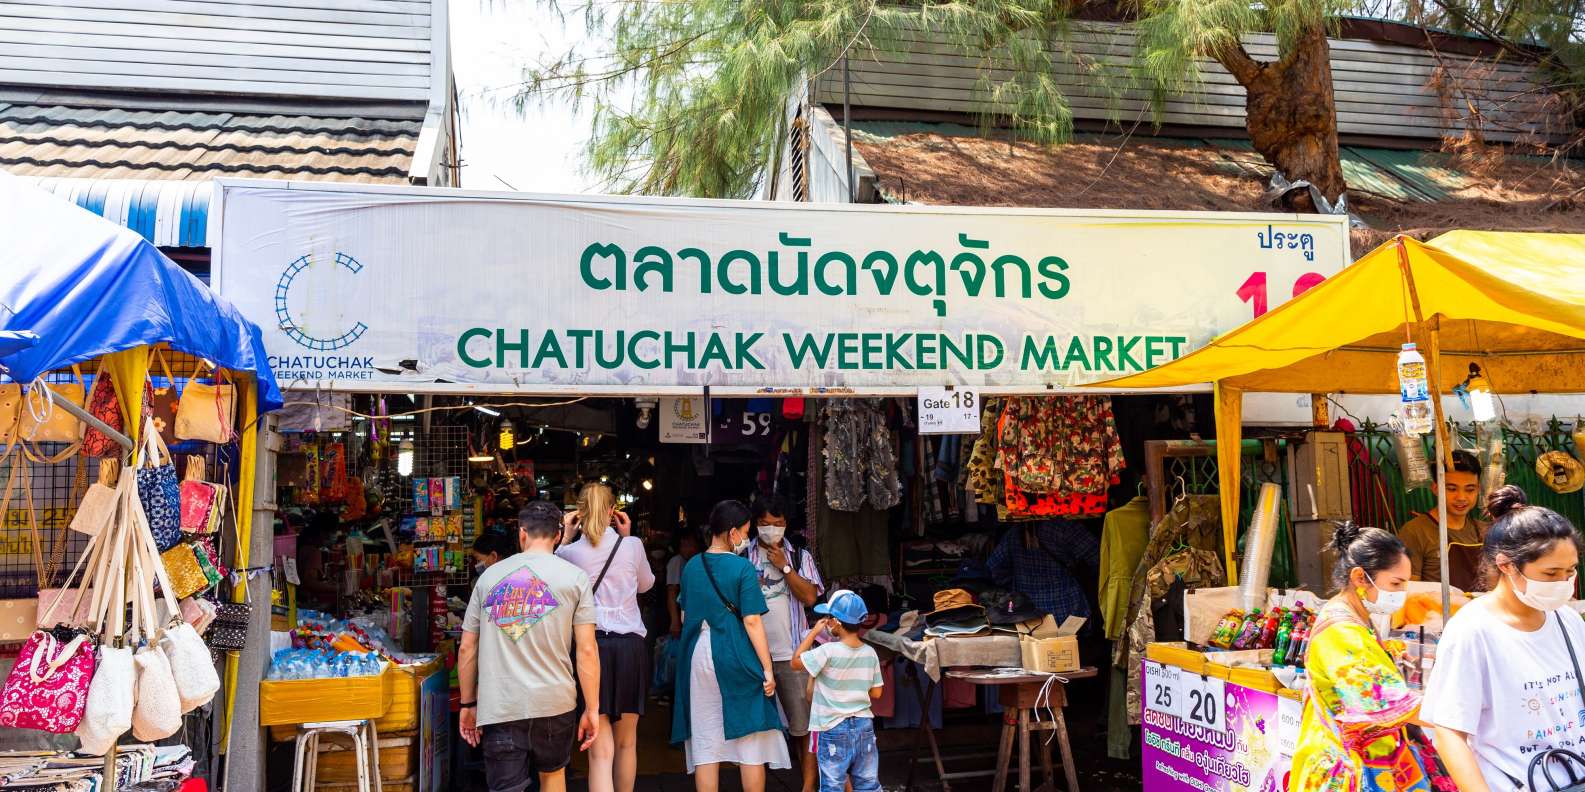 Weekend market. Рынок Чатучак в Бангкоке. Рынок выходного дня Чатучак Бангкок. Chatuchak weekend Market. Чатучак в Тайланде.